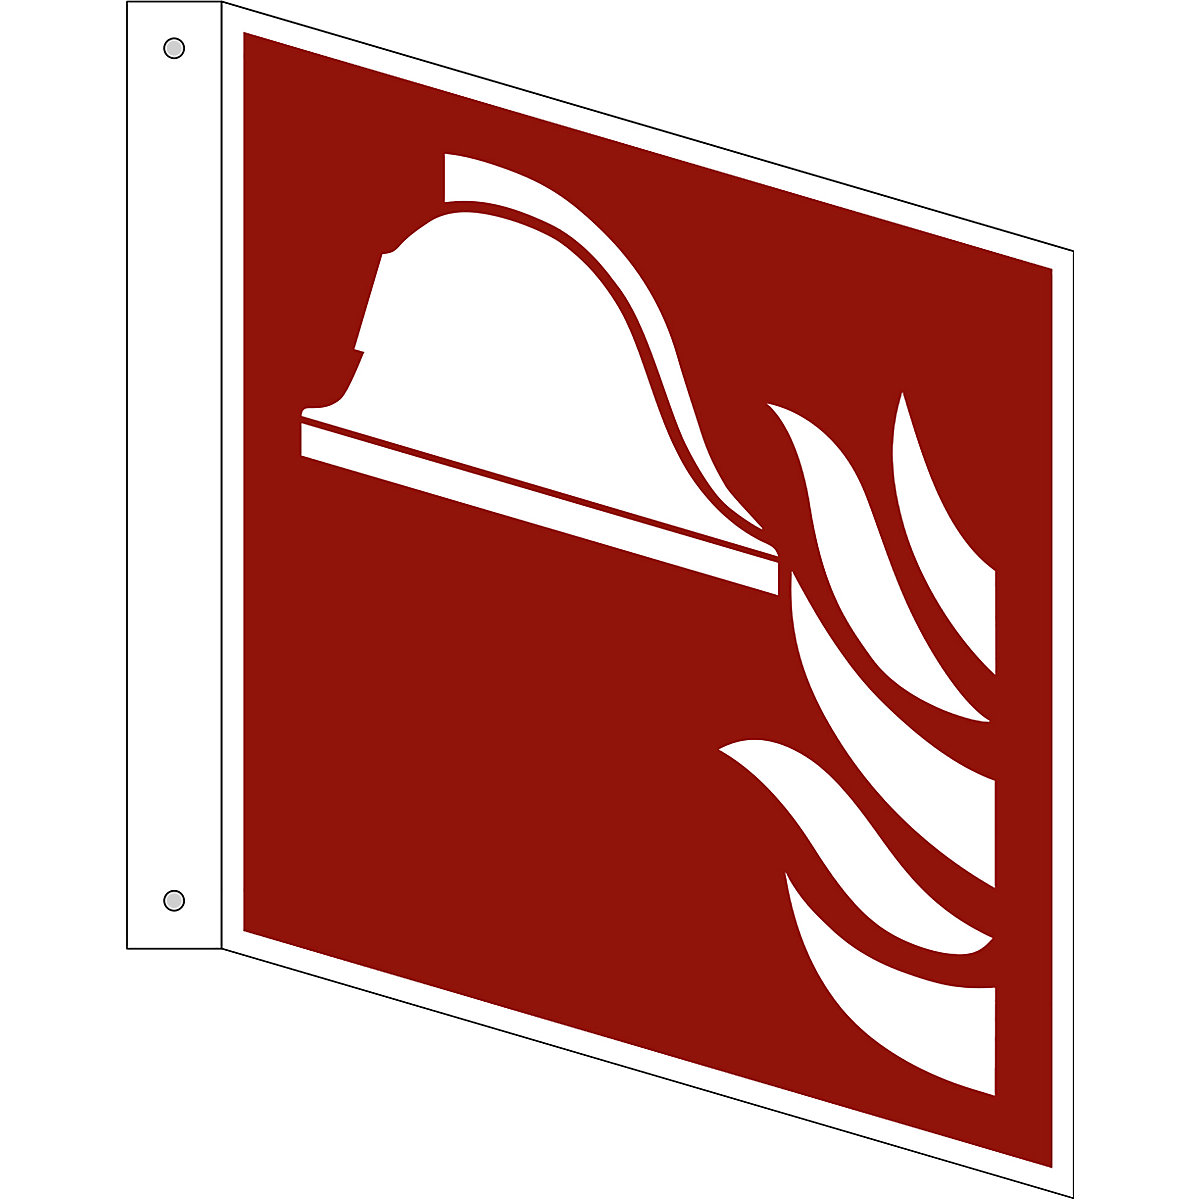 Značka pro ochranu proti požáru, prostředky a přístroje pro hašení požáru, bal.j. 10 ks, hliník, vlajkový štítek, 200 x 200 mm